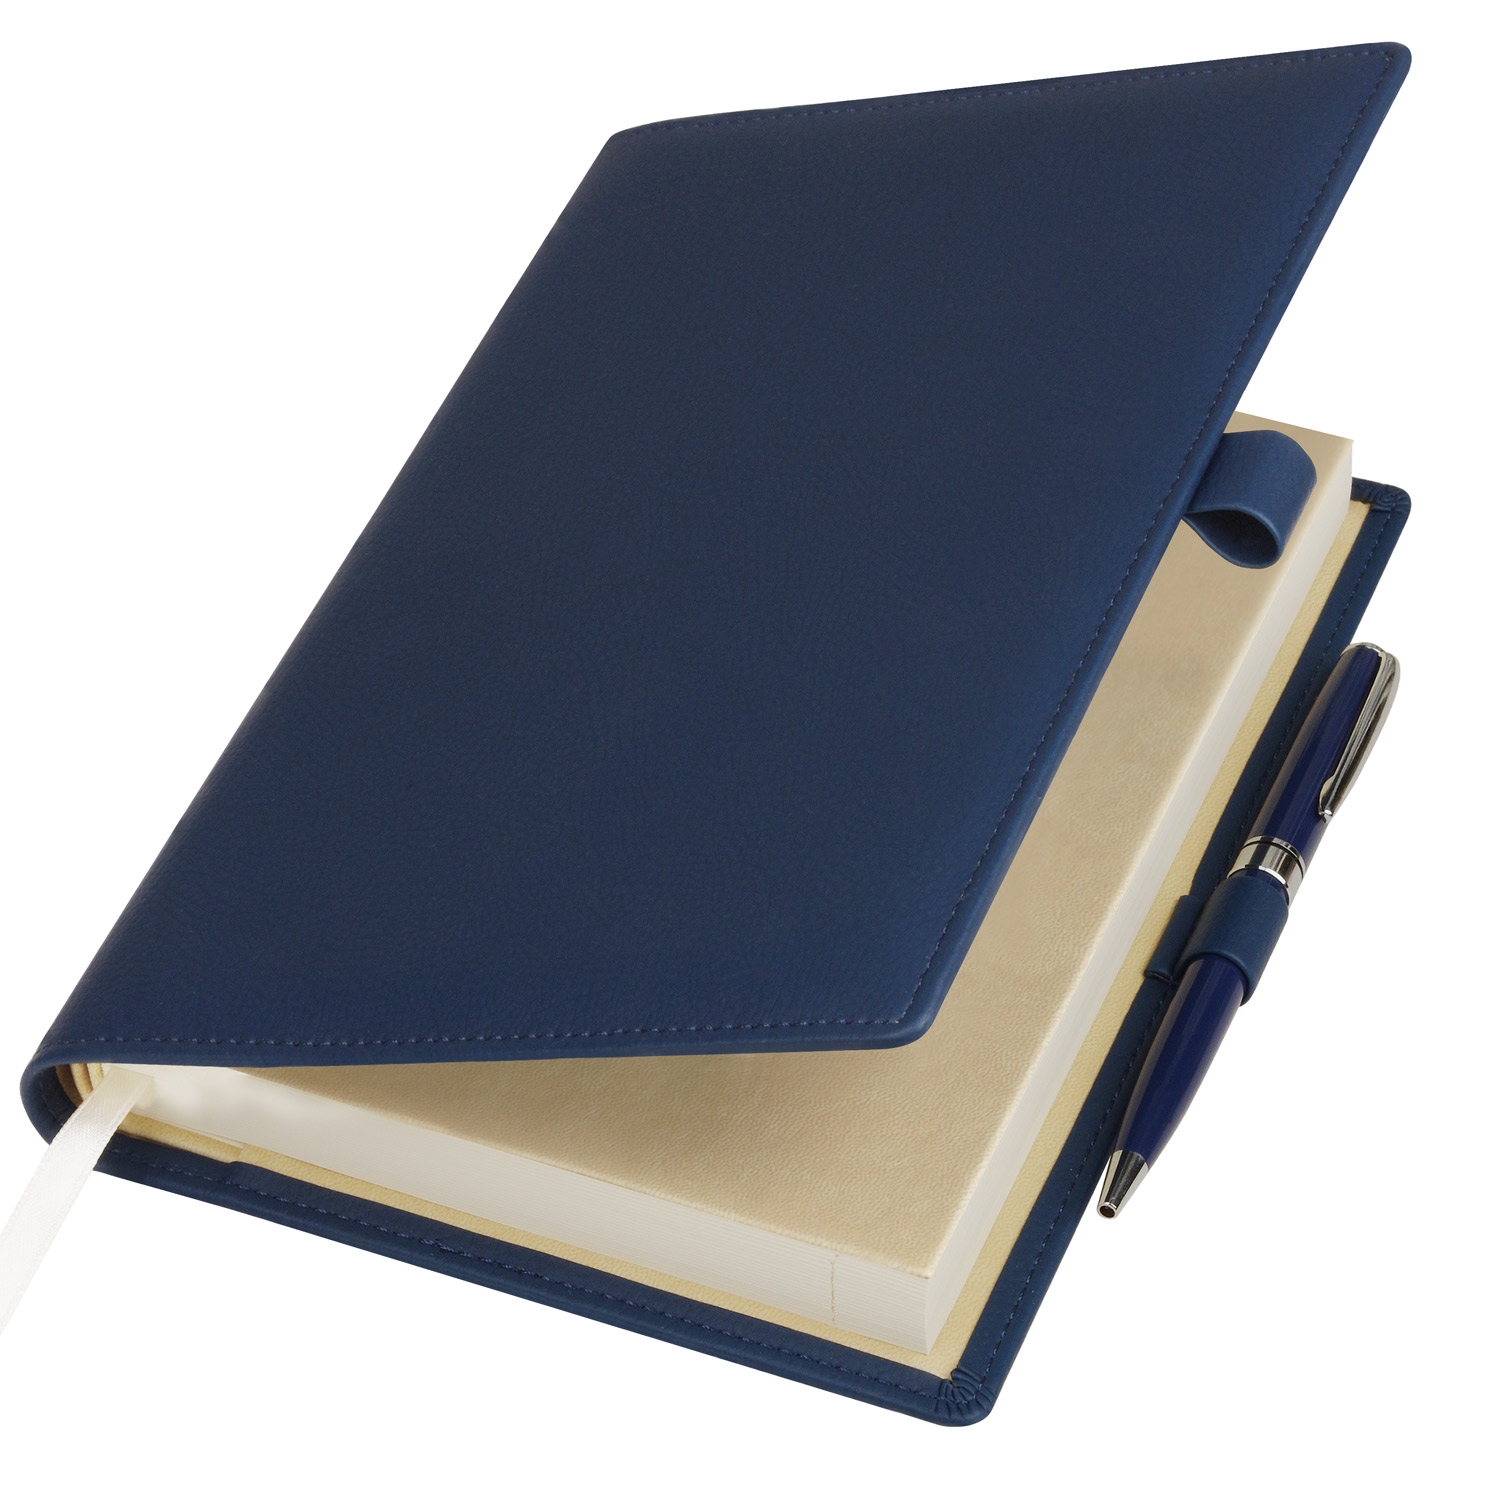 Артикул: A21502.030 — Ежедневник-портфолио Clip, синий, обложка soft touch, недатированный кремовый блок, подарочная коробка, в комплекте ручка Tesoro синяя